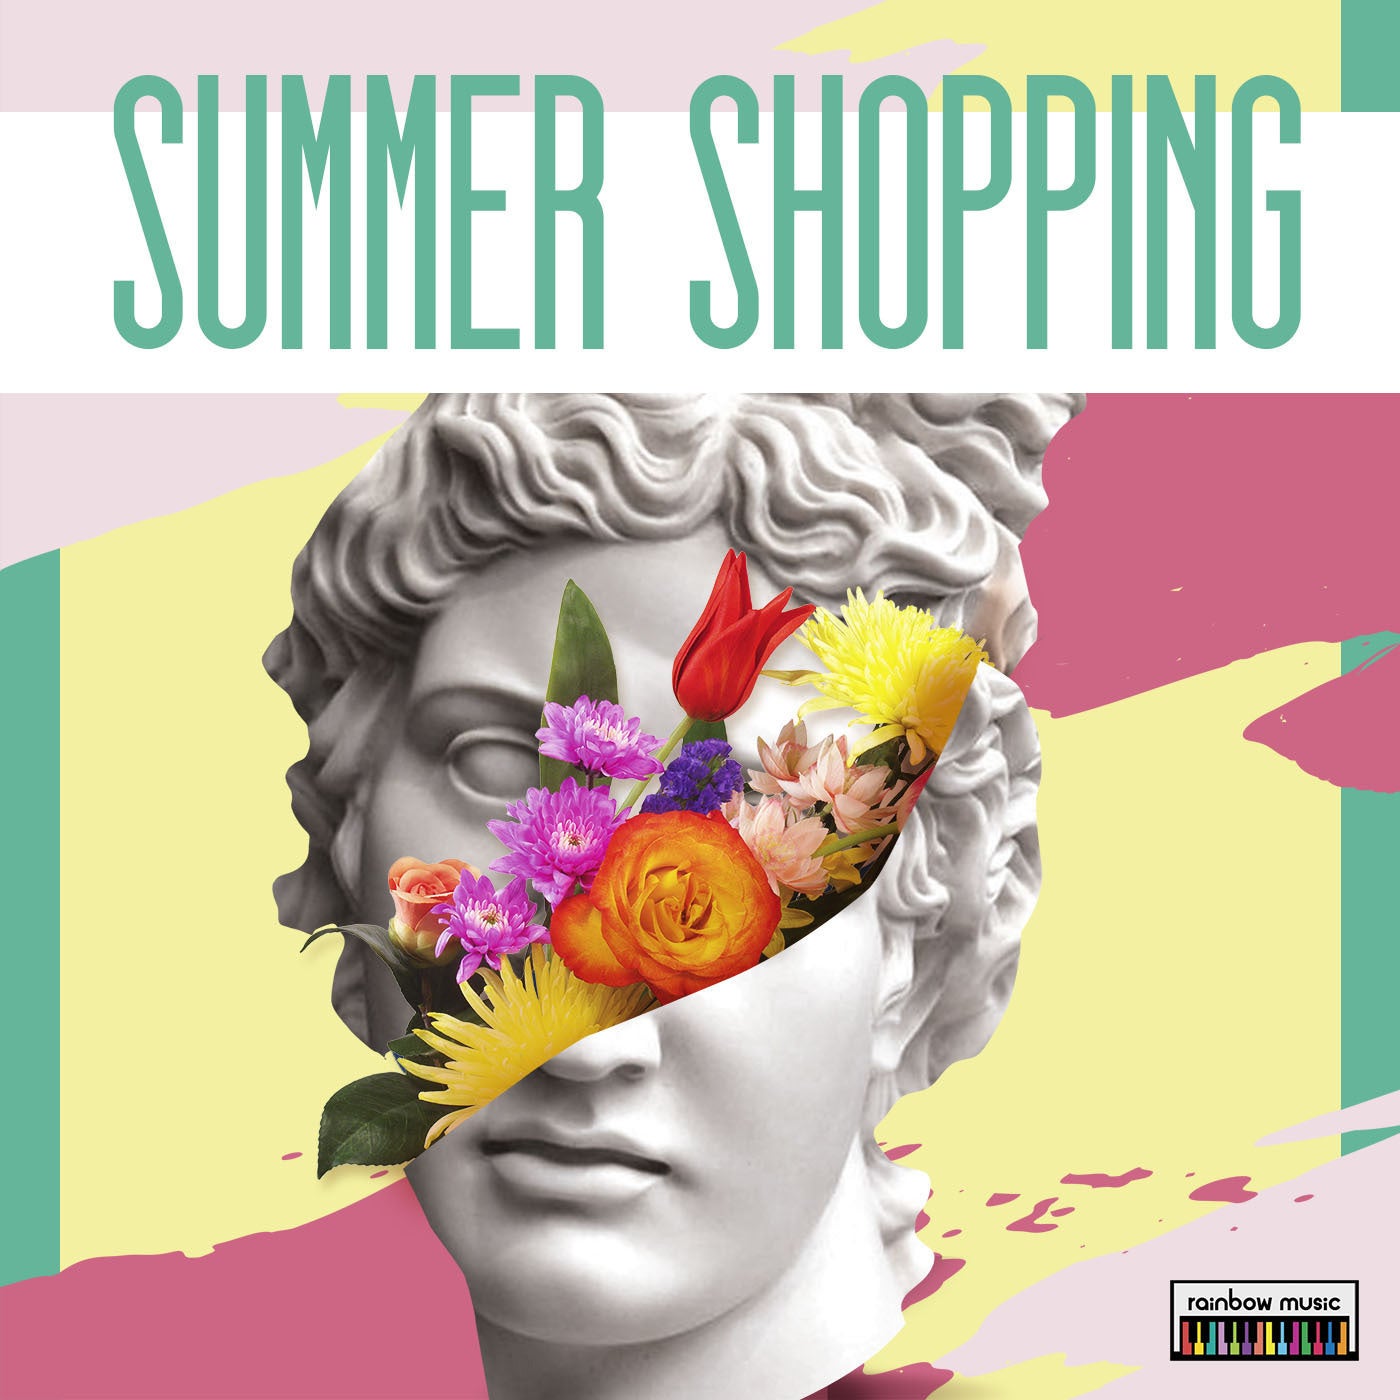 Summer Shopping